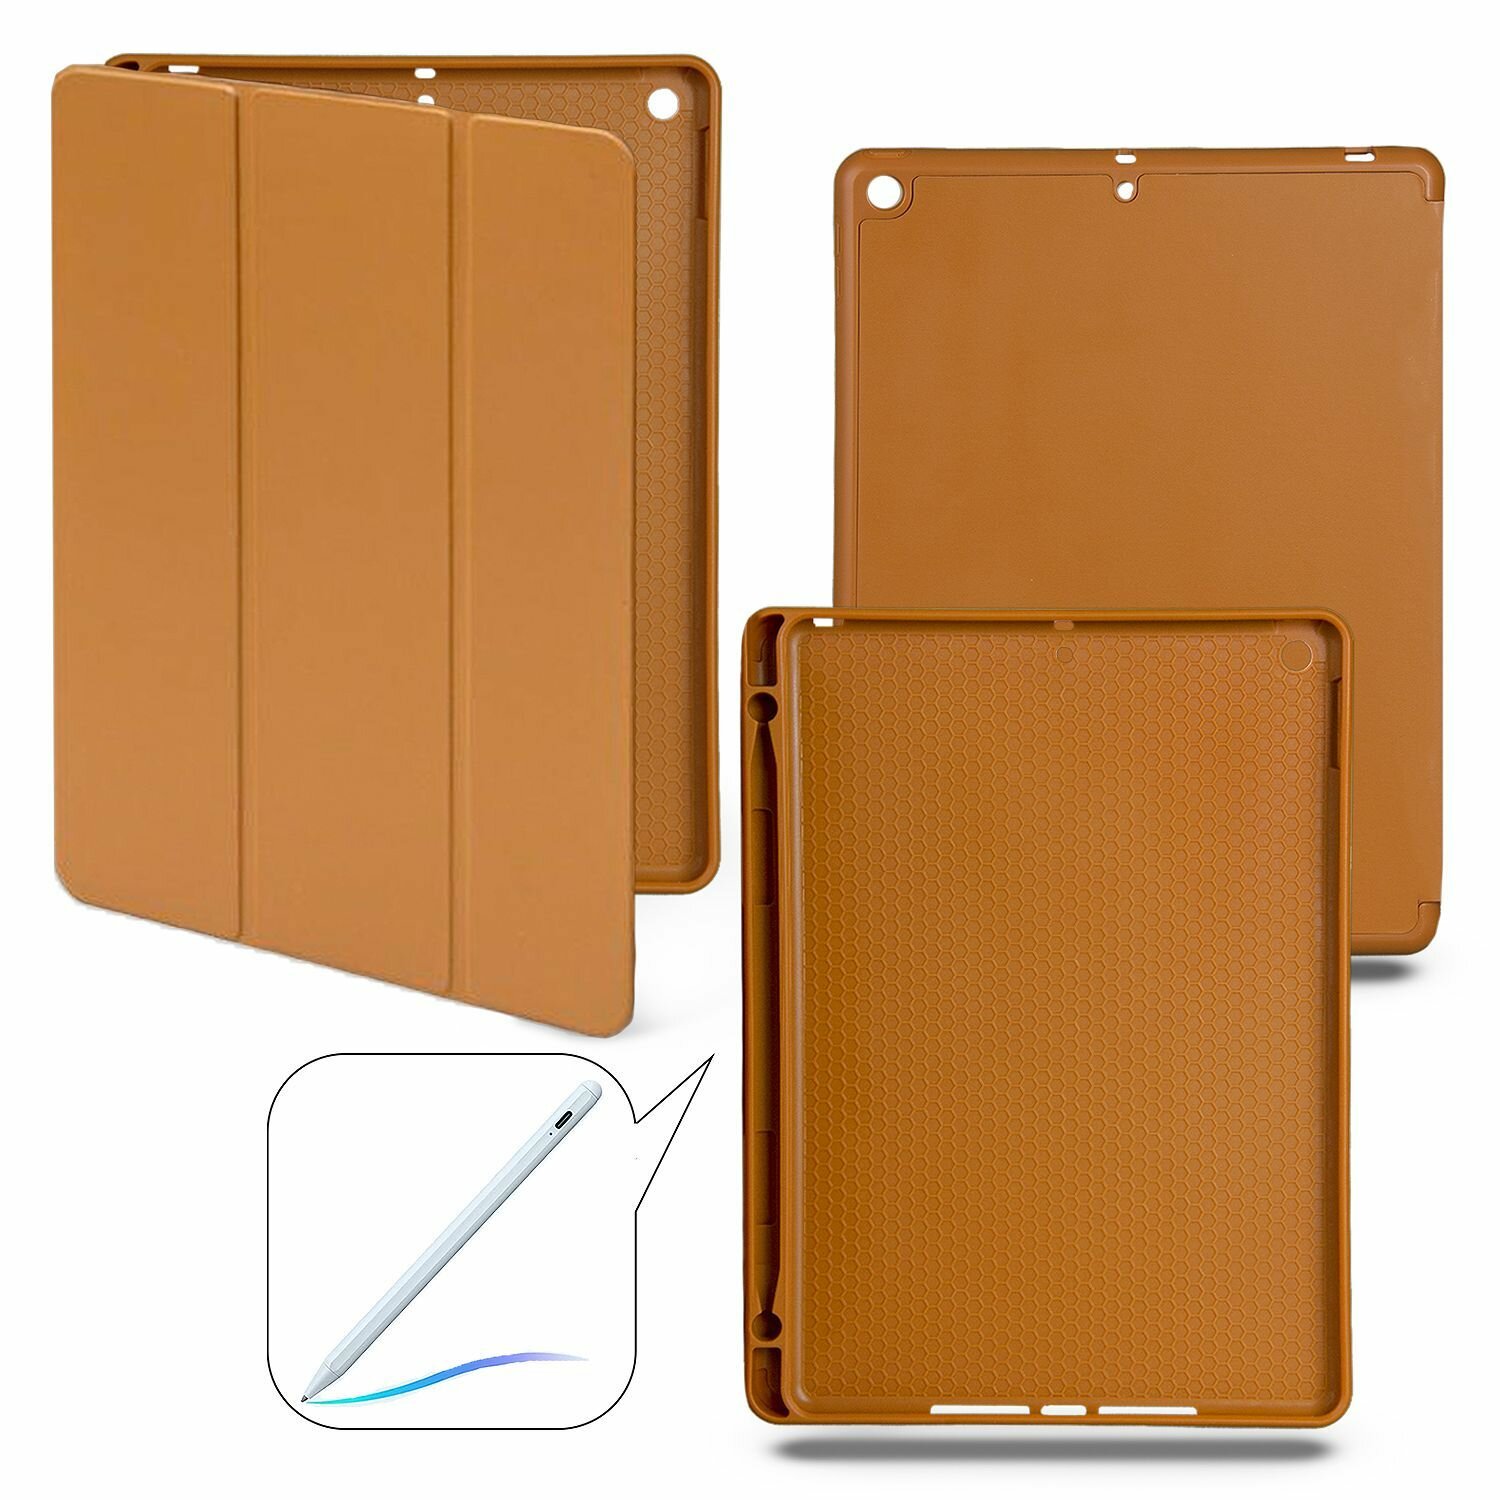 Чехол-книжка для iPad 7 / 8 / 9 (2019/2020/2021) с отделением для стилуса, коричневый